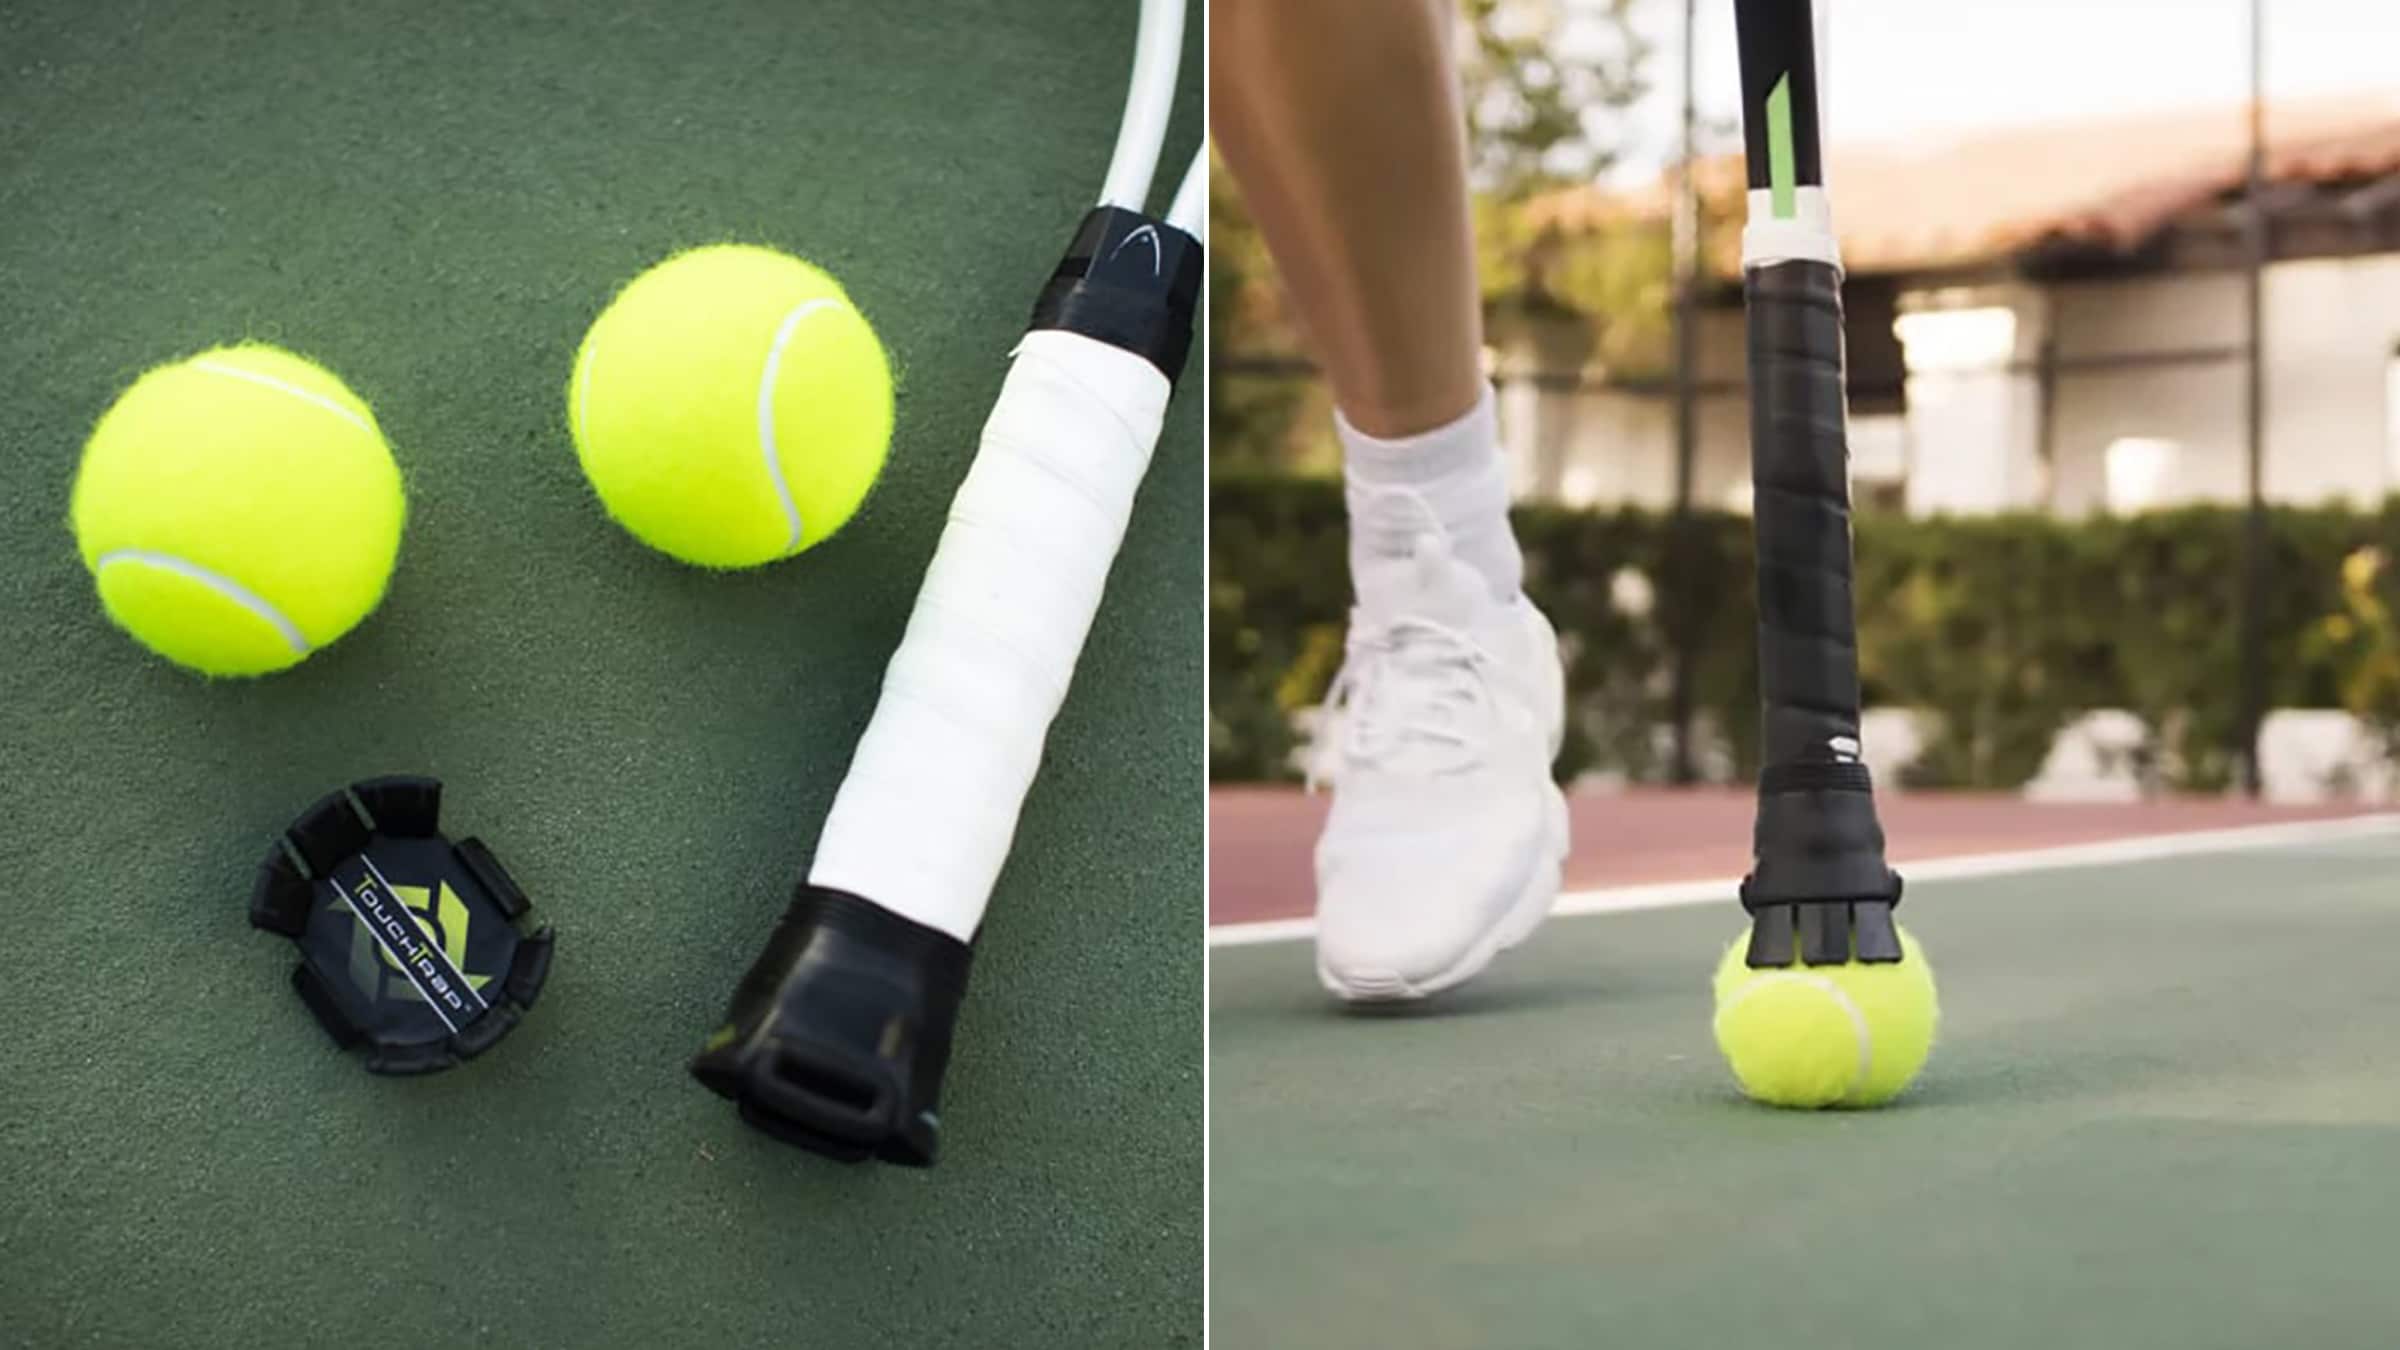 collecteur de balles de tennis, aide au coaching et équipement de tennis 